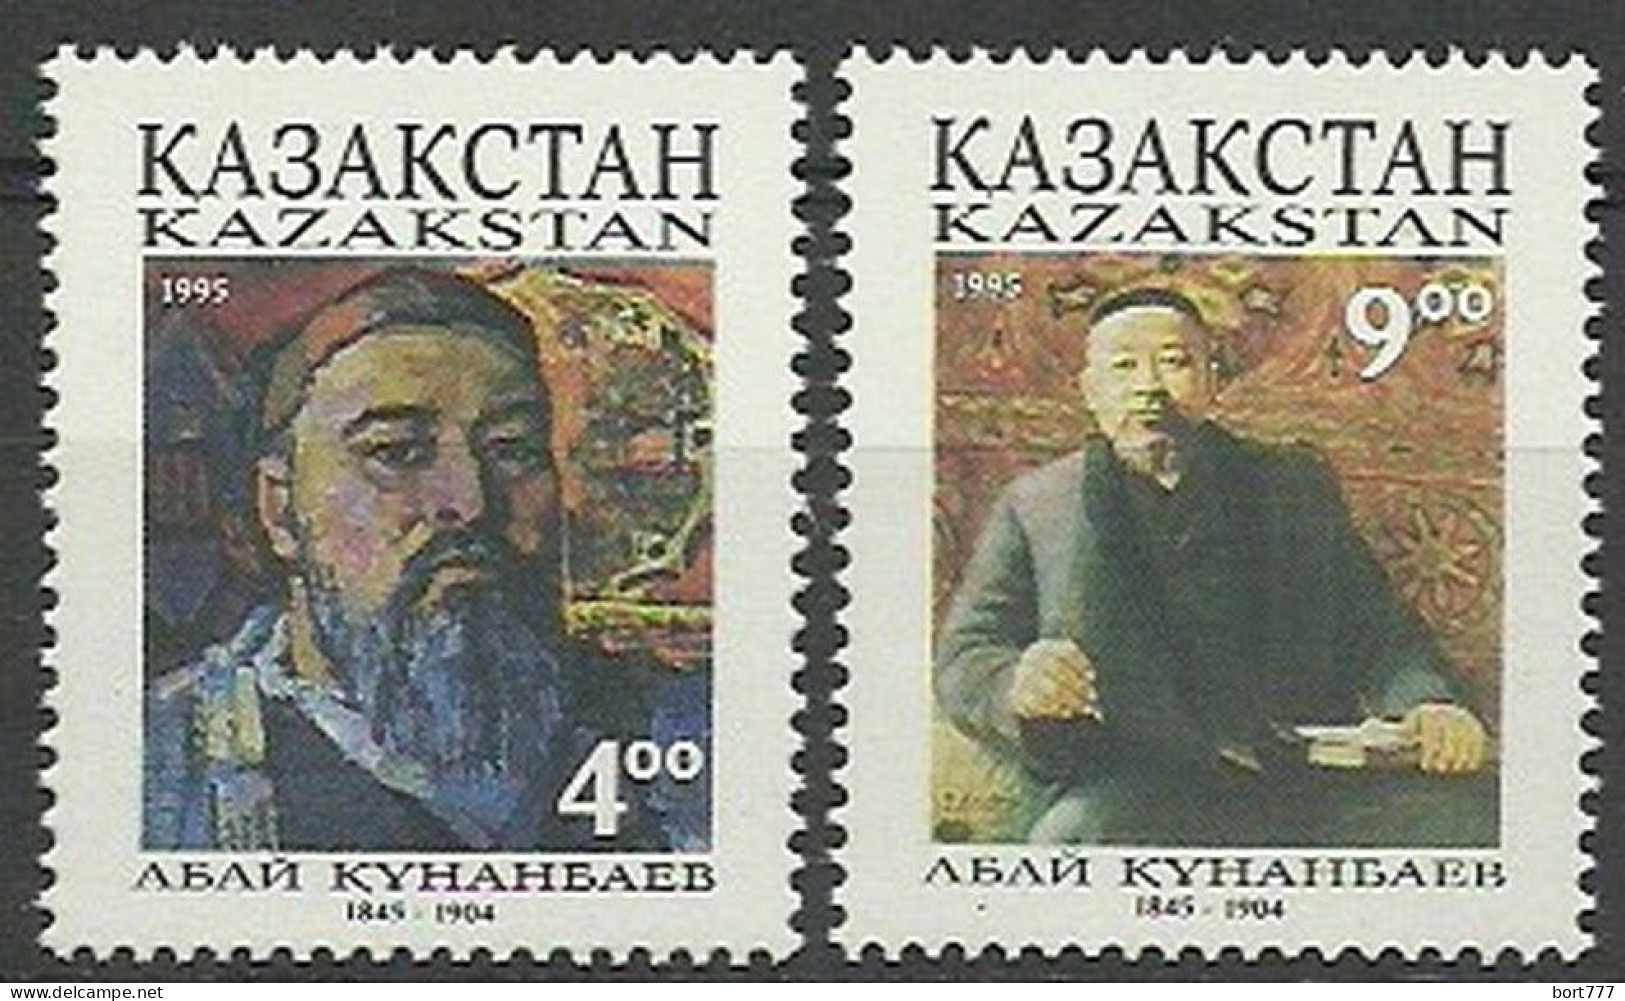 Kazakhstan 1995 Year Mint Stamps (MNH**)  - Kasachstan